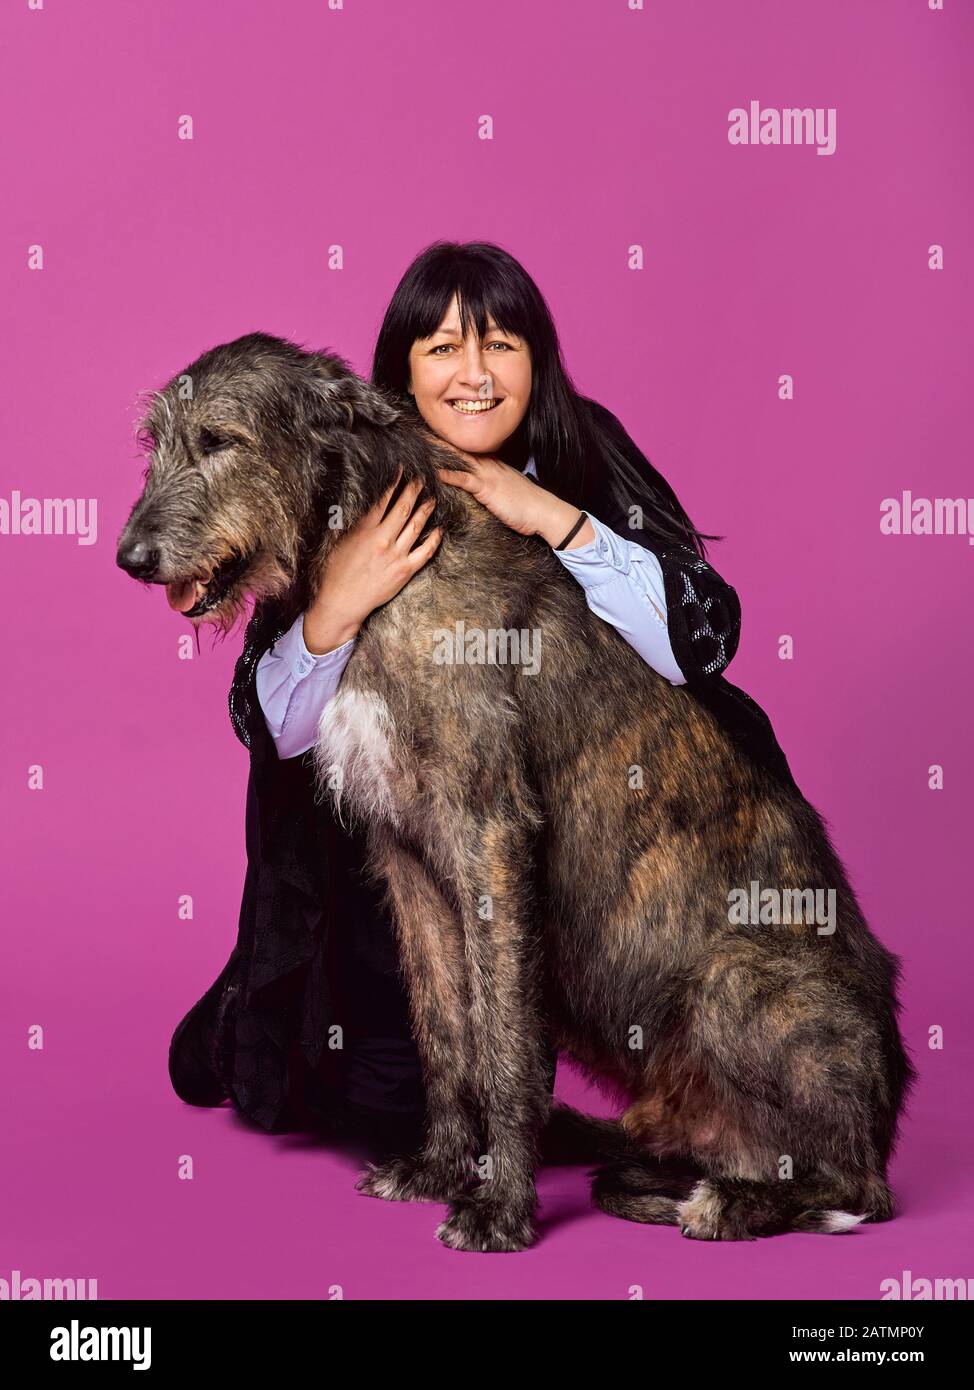 Femme souriante et joyeuse brunette avec Wolfhounds irlandais gris sur fond de couleur fuchsia en studio photo. Concept d'amitié, d'amour, d'animaux de compagnie. Banque D'Images